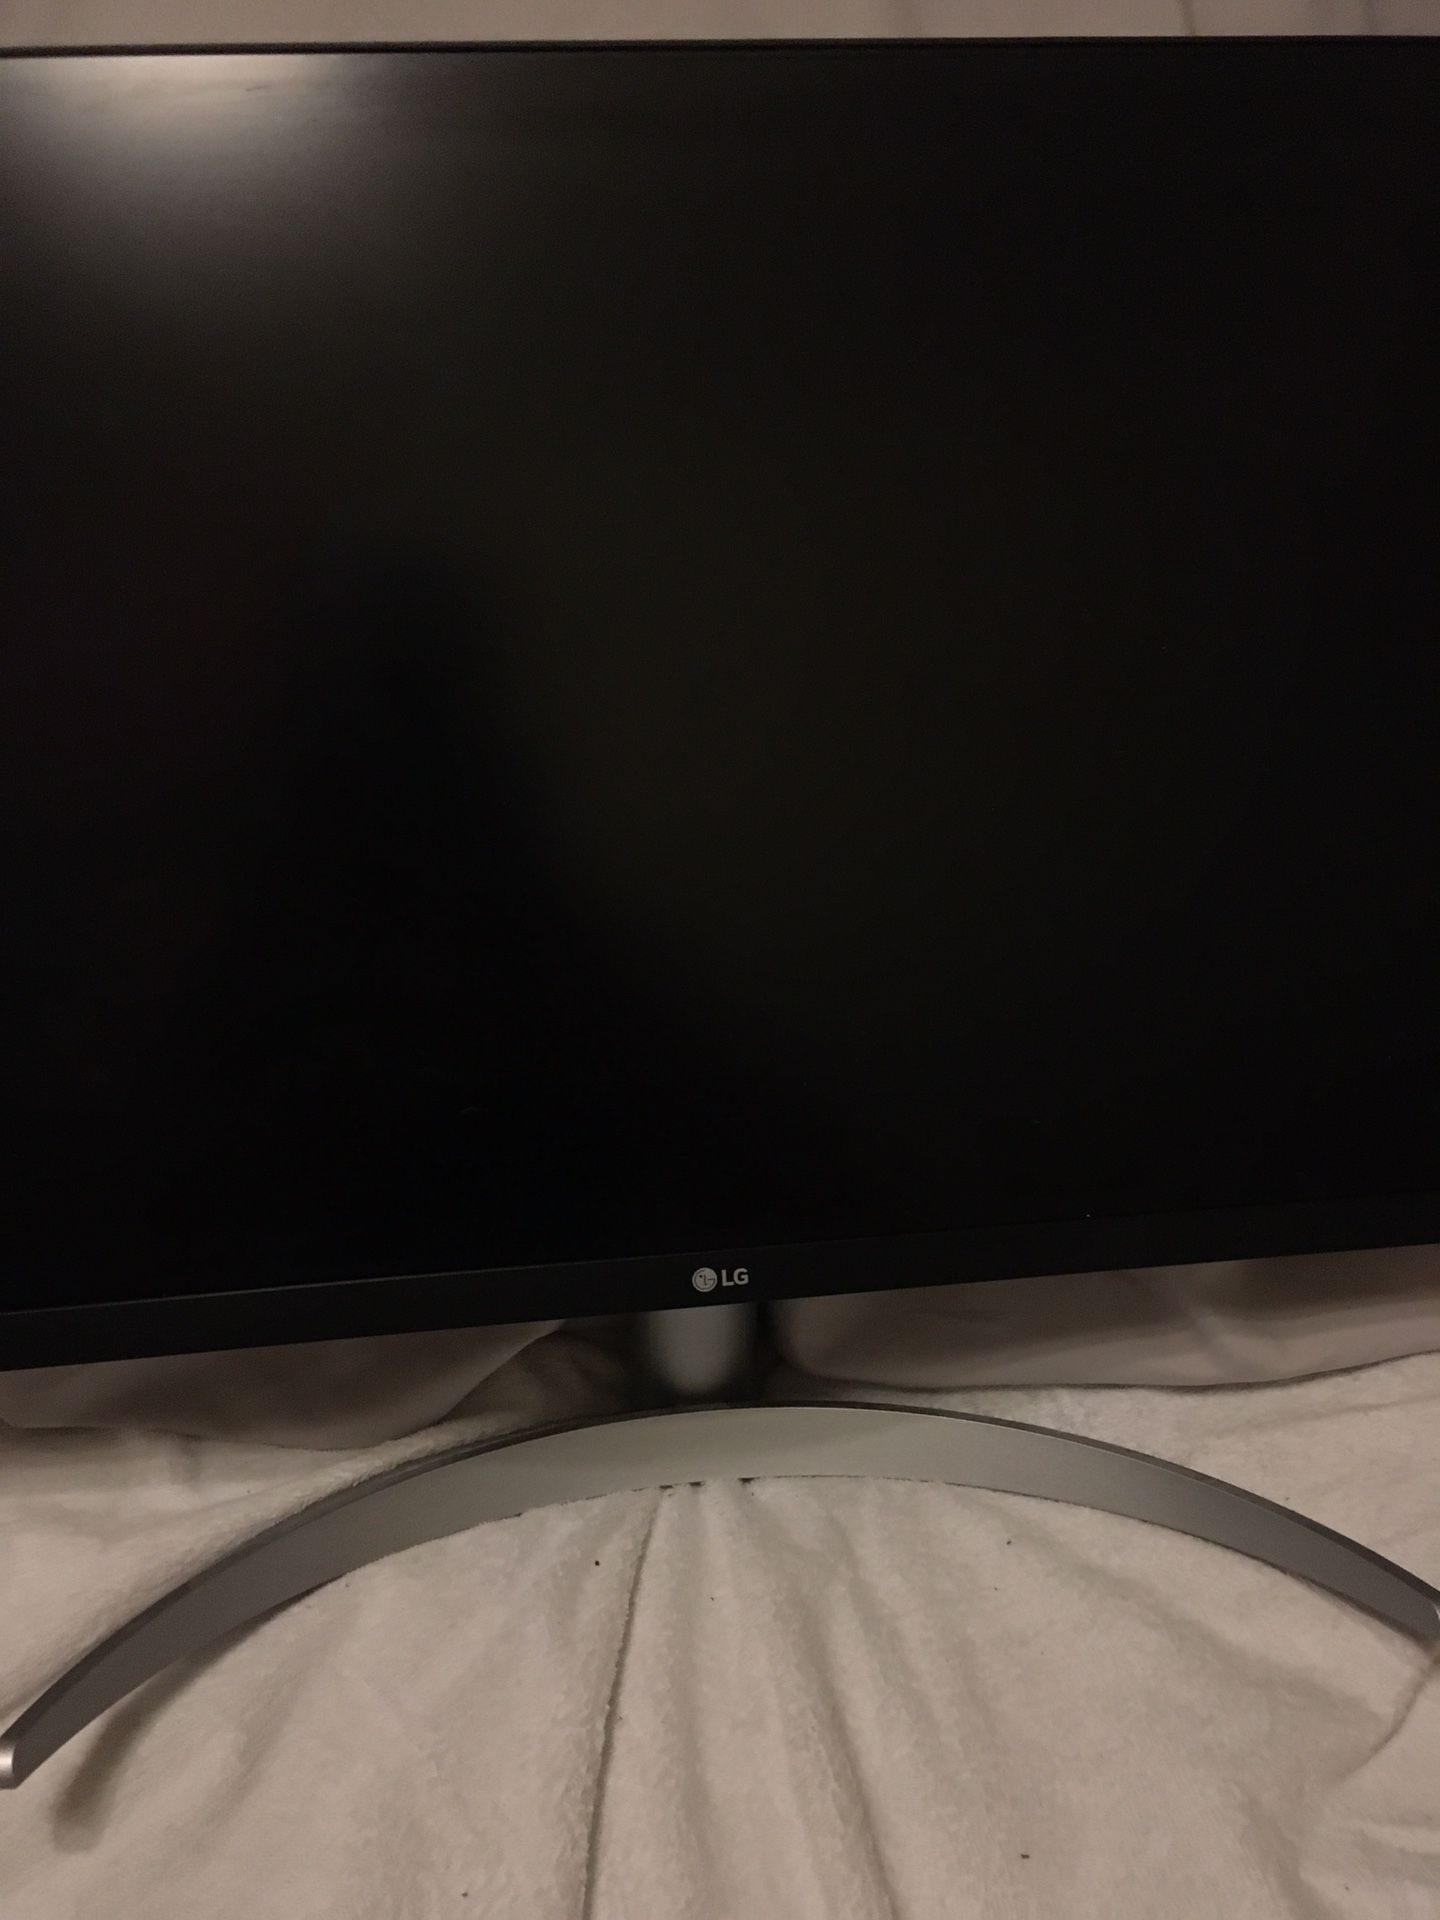 LG Computer Monitor 1080i